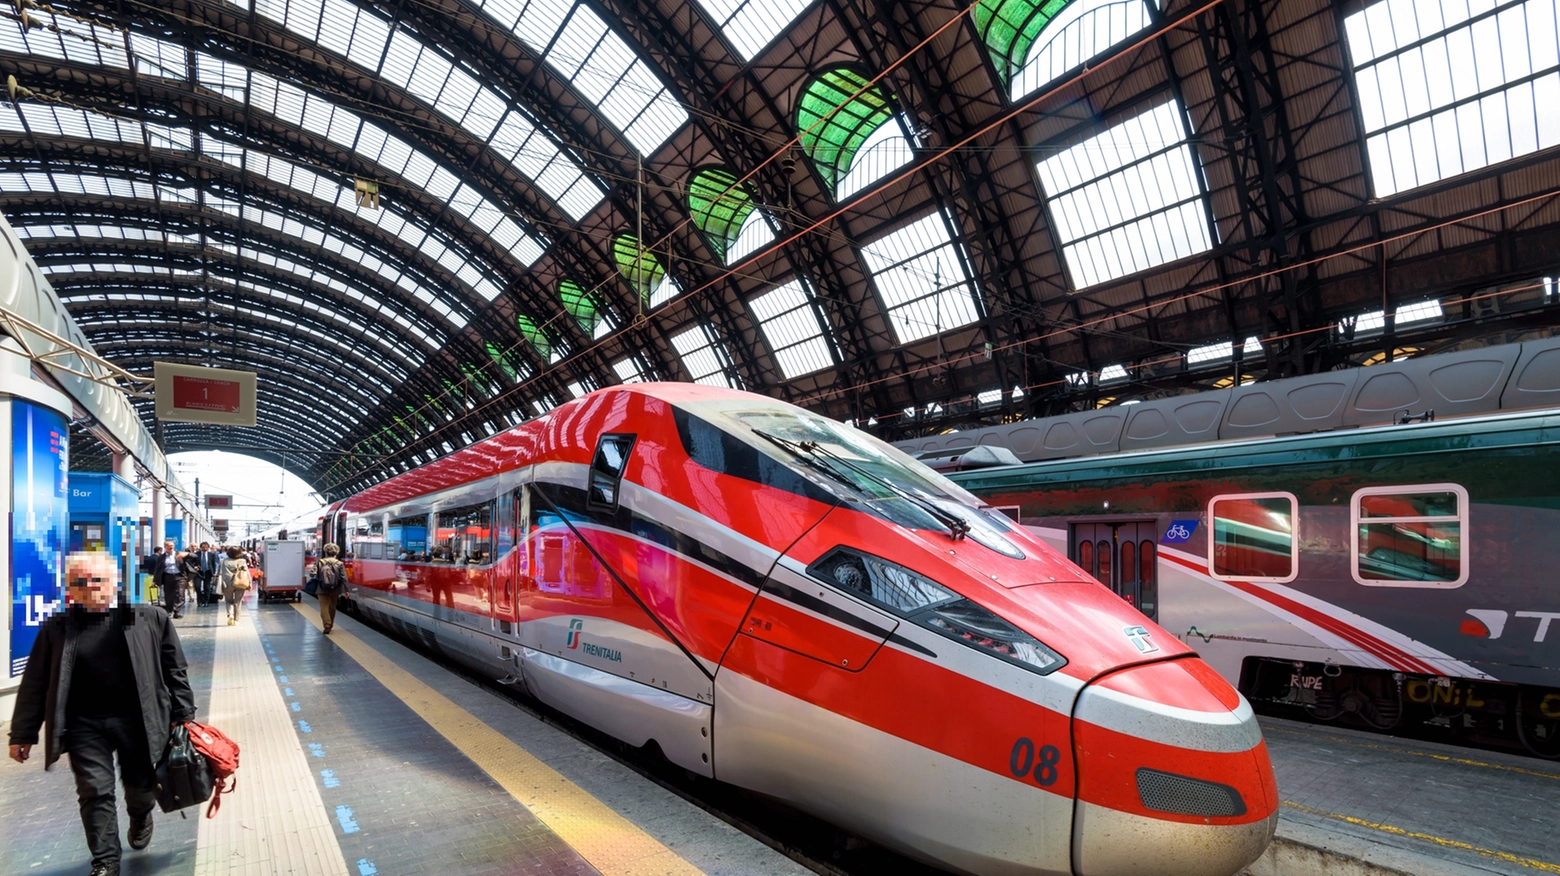 L'assessore ai Trasporti Andrea Corsini scrive a Trenitalia: "Assoluta contrarietà a una decisione unilaterale"